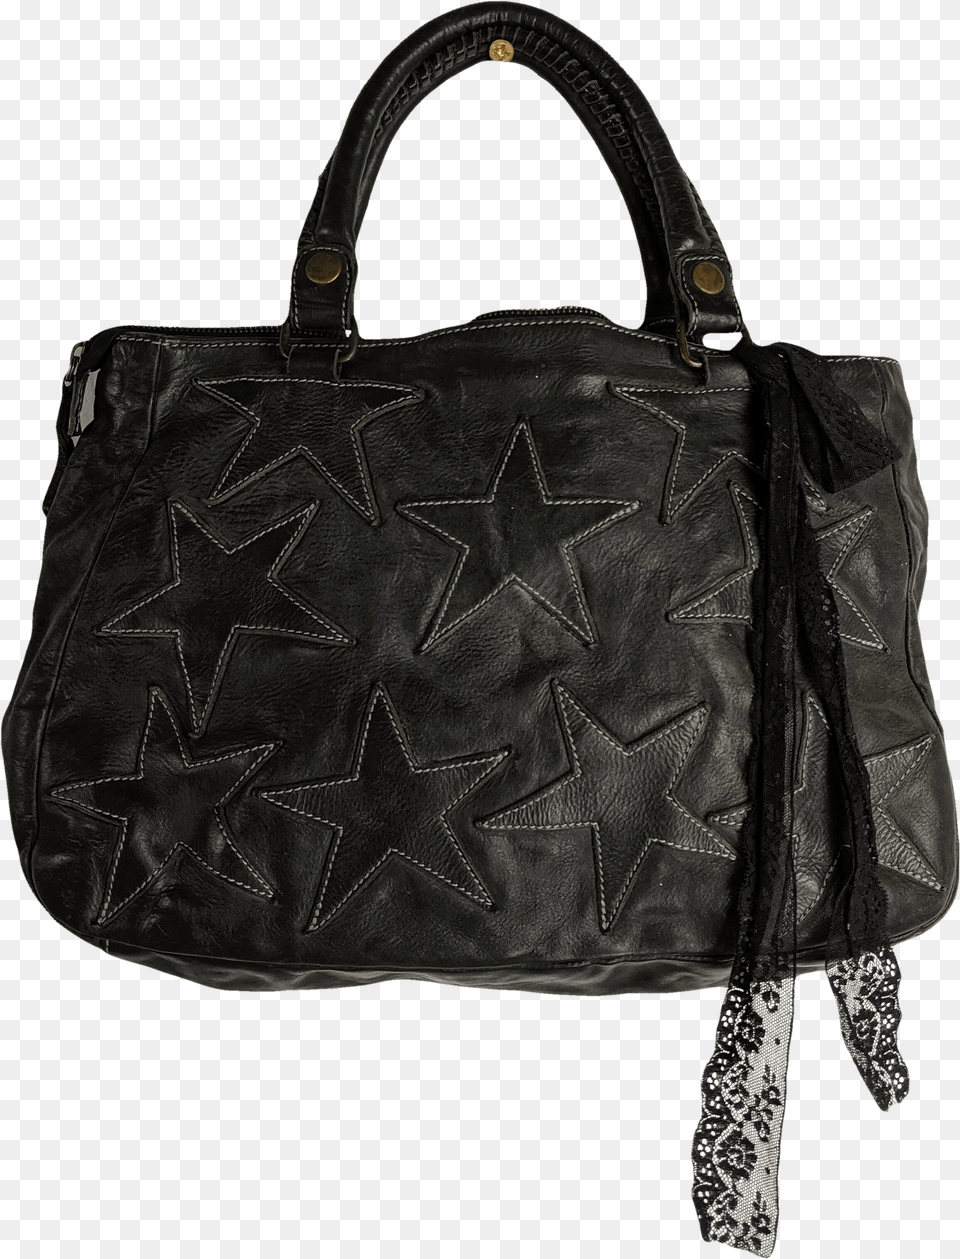 Black Star Shoulder Bag By Rika For Women, Accessories, Handbag, Purse, Tote Bag Png Image